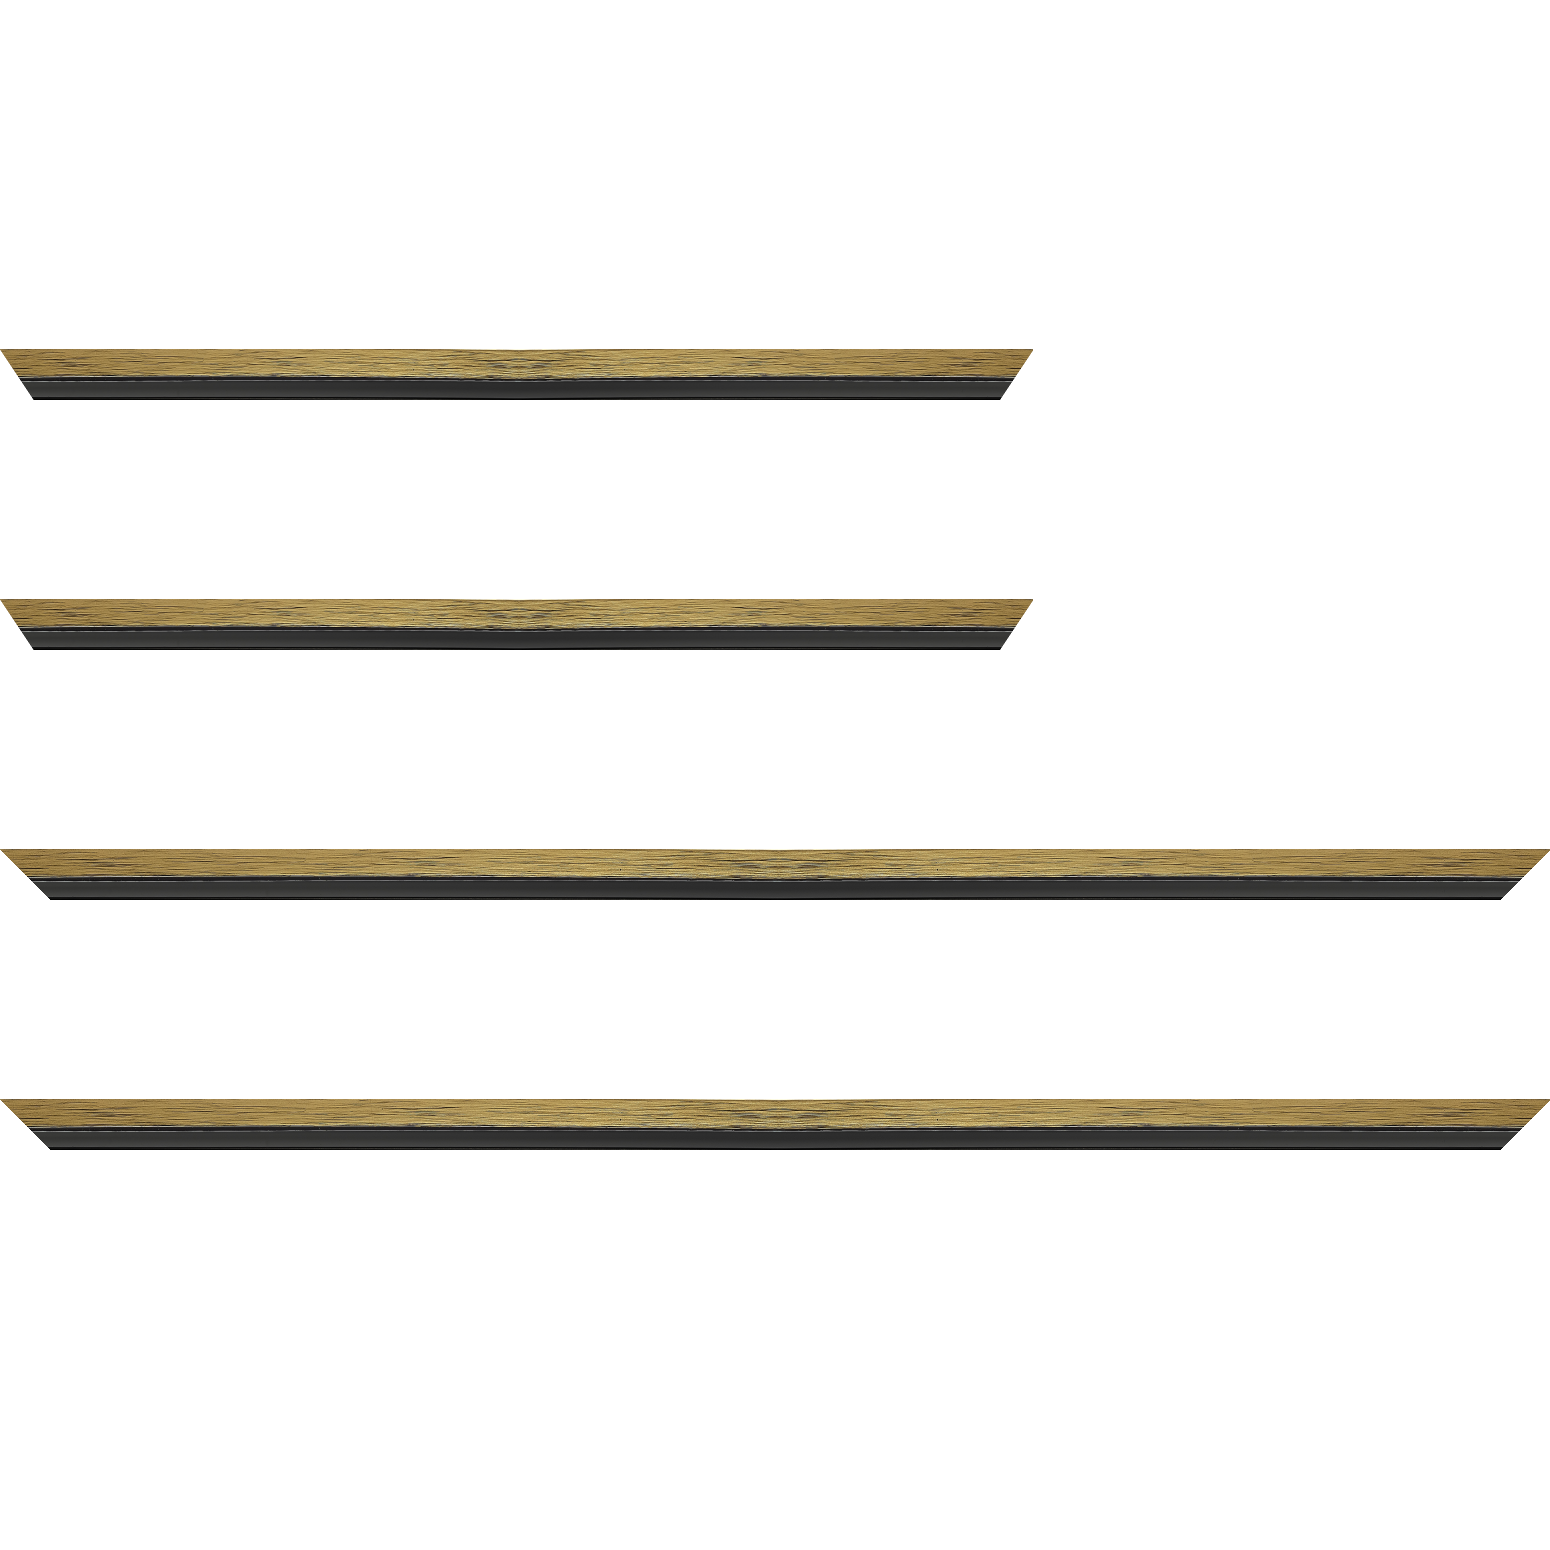 Baguette service précoupé Bois profil plat largeur 1.6cm couleur or contemporain filet noir en retrait de la face du cadre de 6mm assurant un effet très original